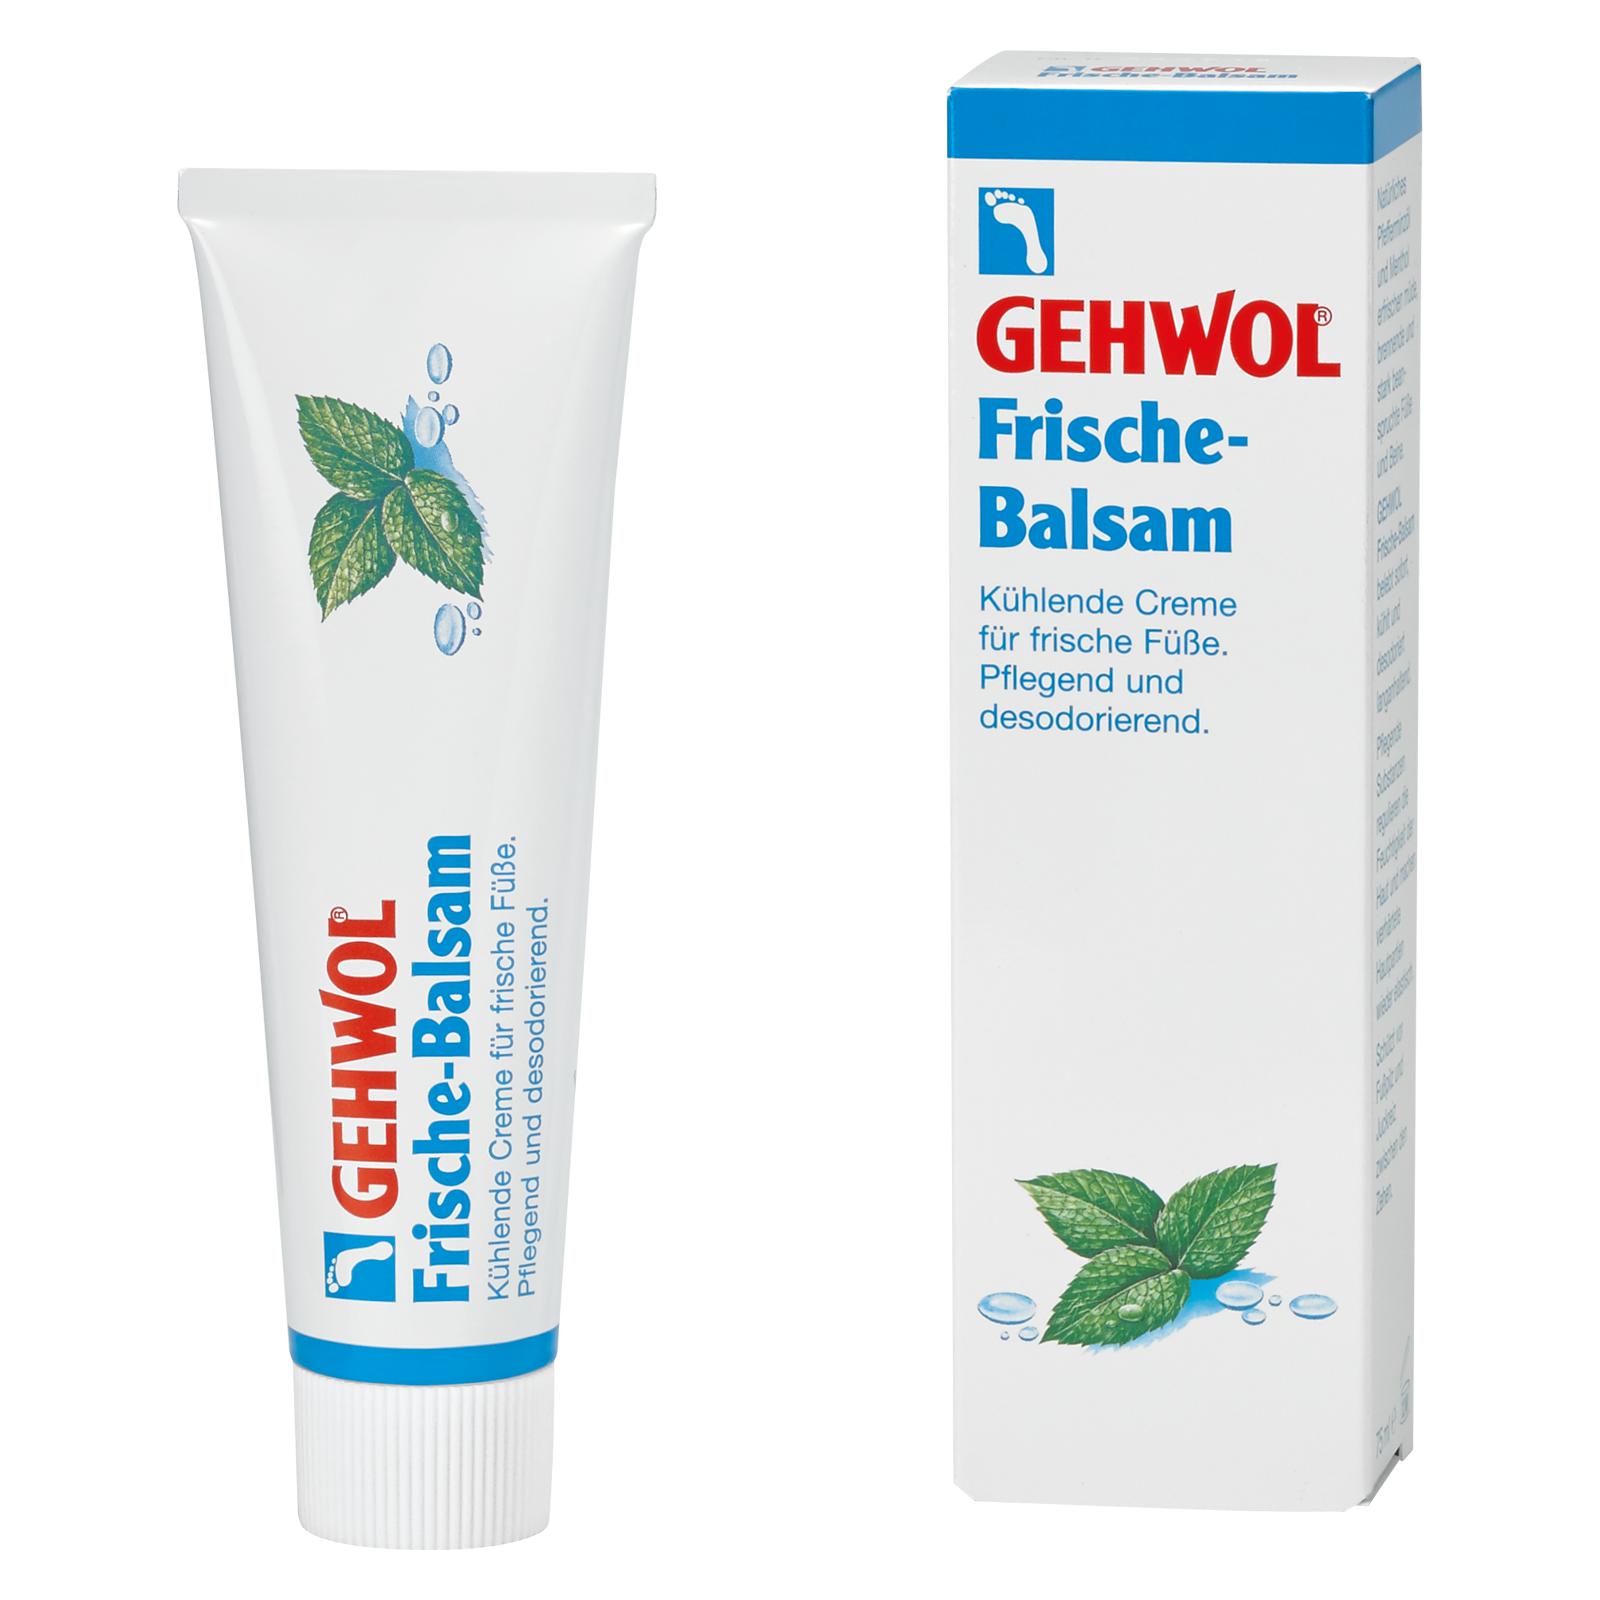 GEHWOL Frische-Balsam 75 ml Tube